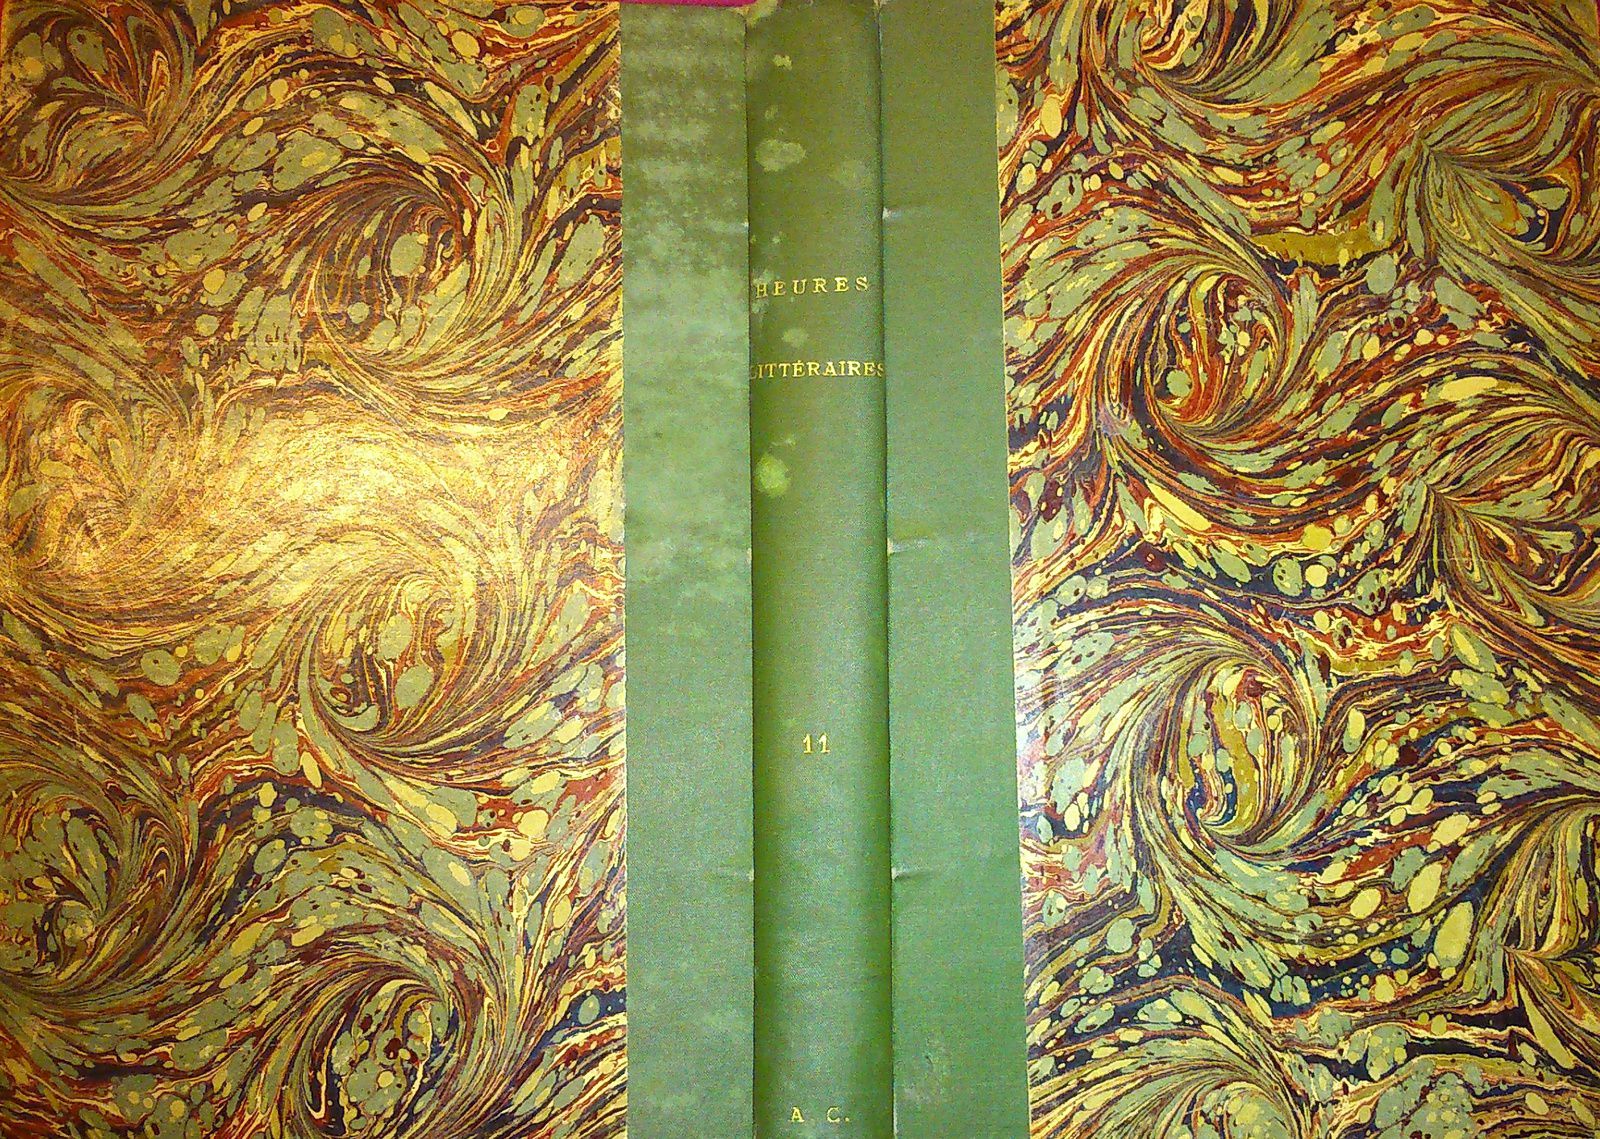 J.-H. Rosny "Le Testament volé" in Les Heures littéraires illustrées (1911)